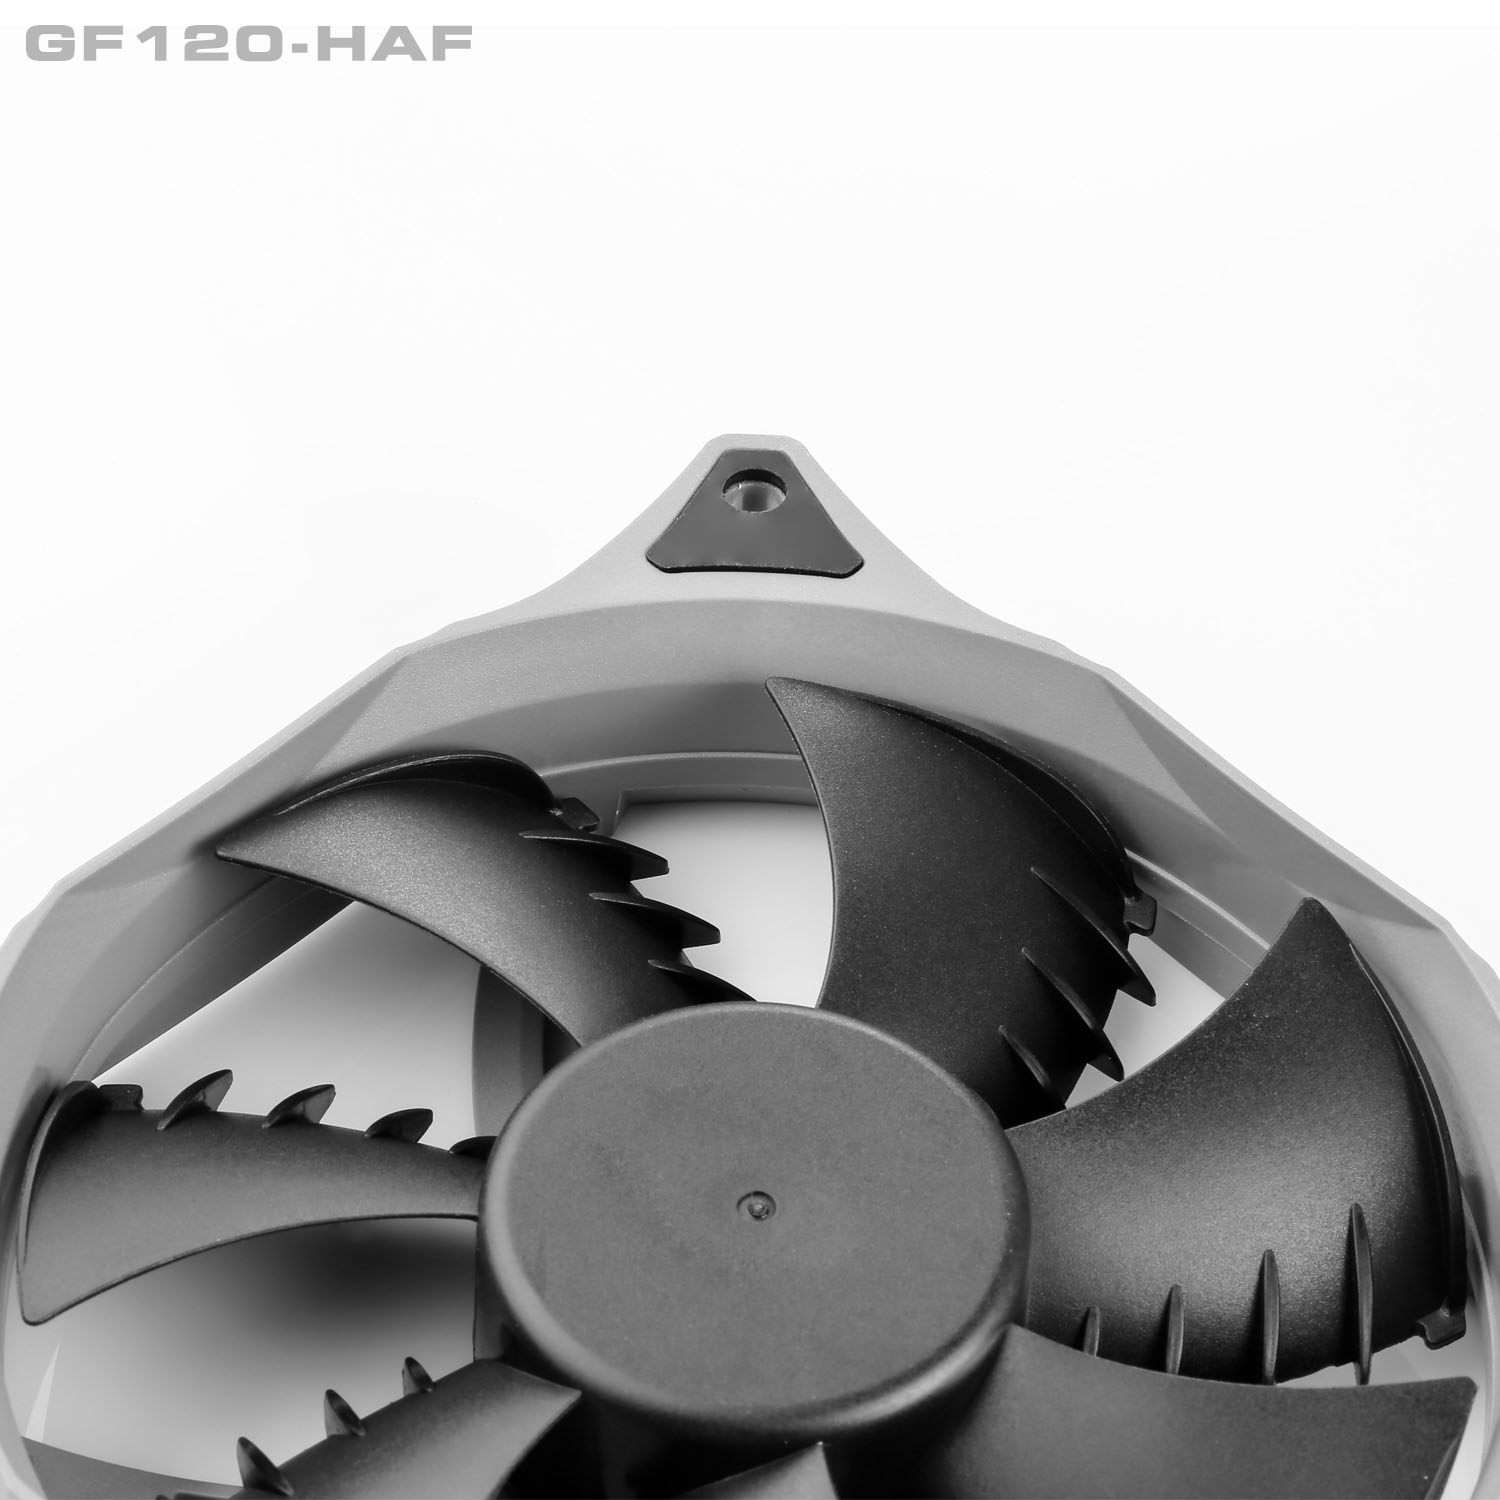 مهم ترین تغییرات ایجاد شده در فن جدید GF120-HAF گرین، می توان به افزایش 2 برابری سرعت چرخش فن به 2100 RPM و قابلیت PWM آن نسبت به فن GF120-FSB اشاره نمود